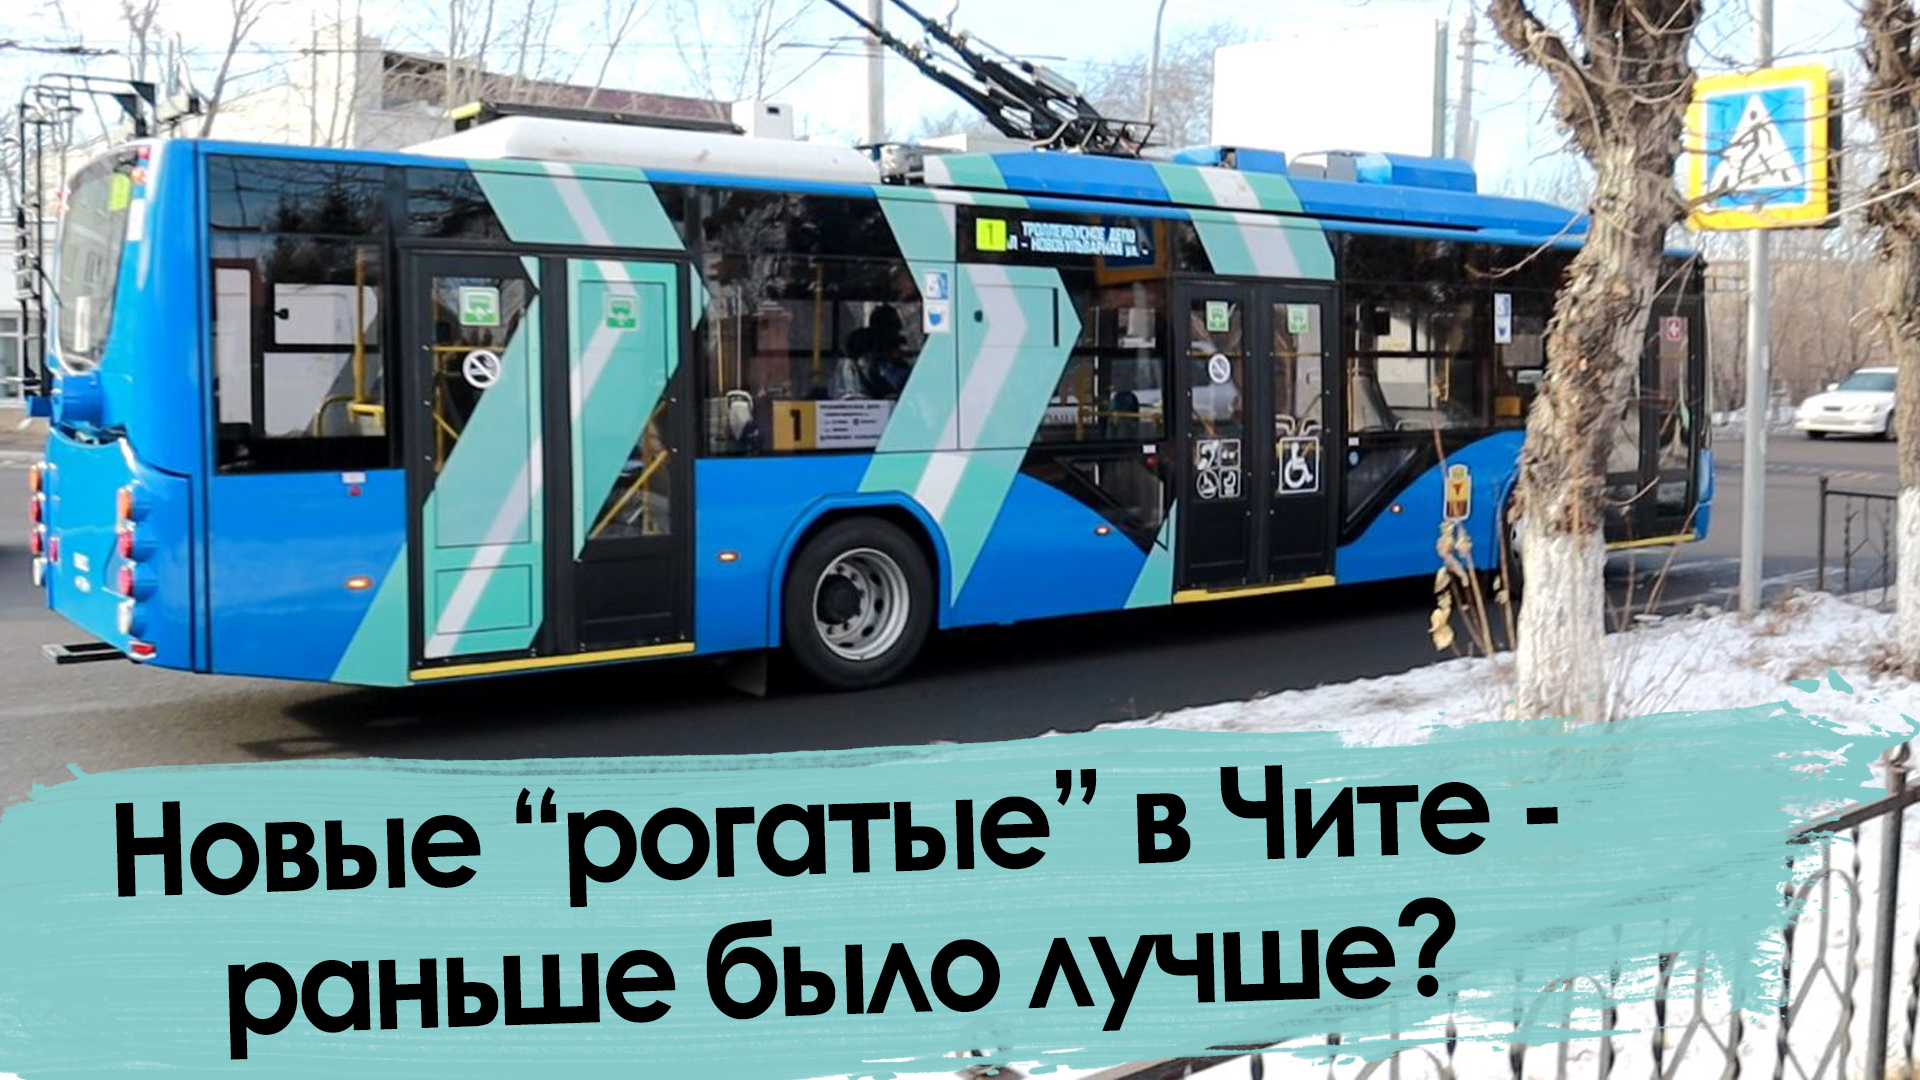 11 друзей из Вологды: Чита получила новые троллейбусы